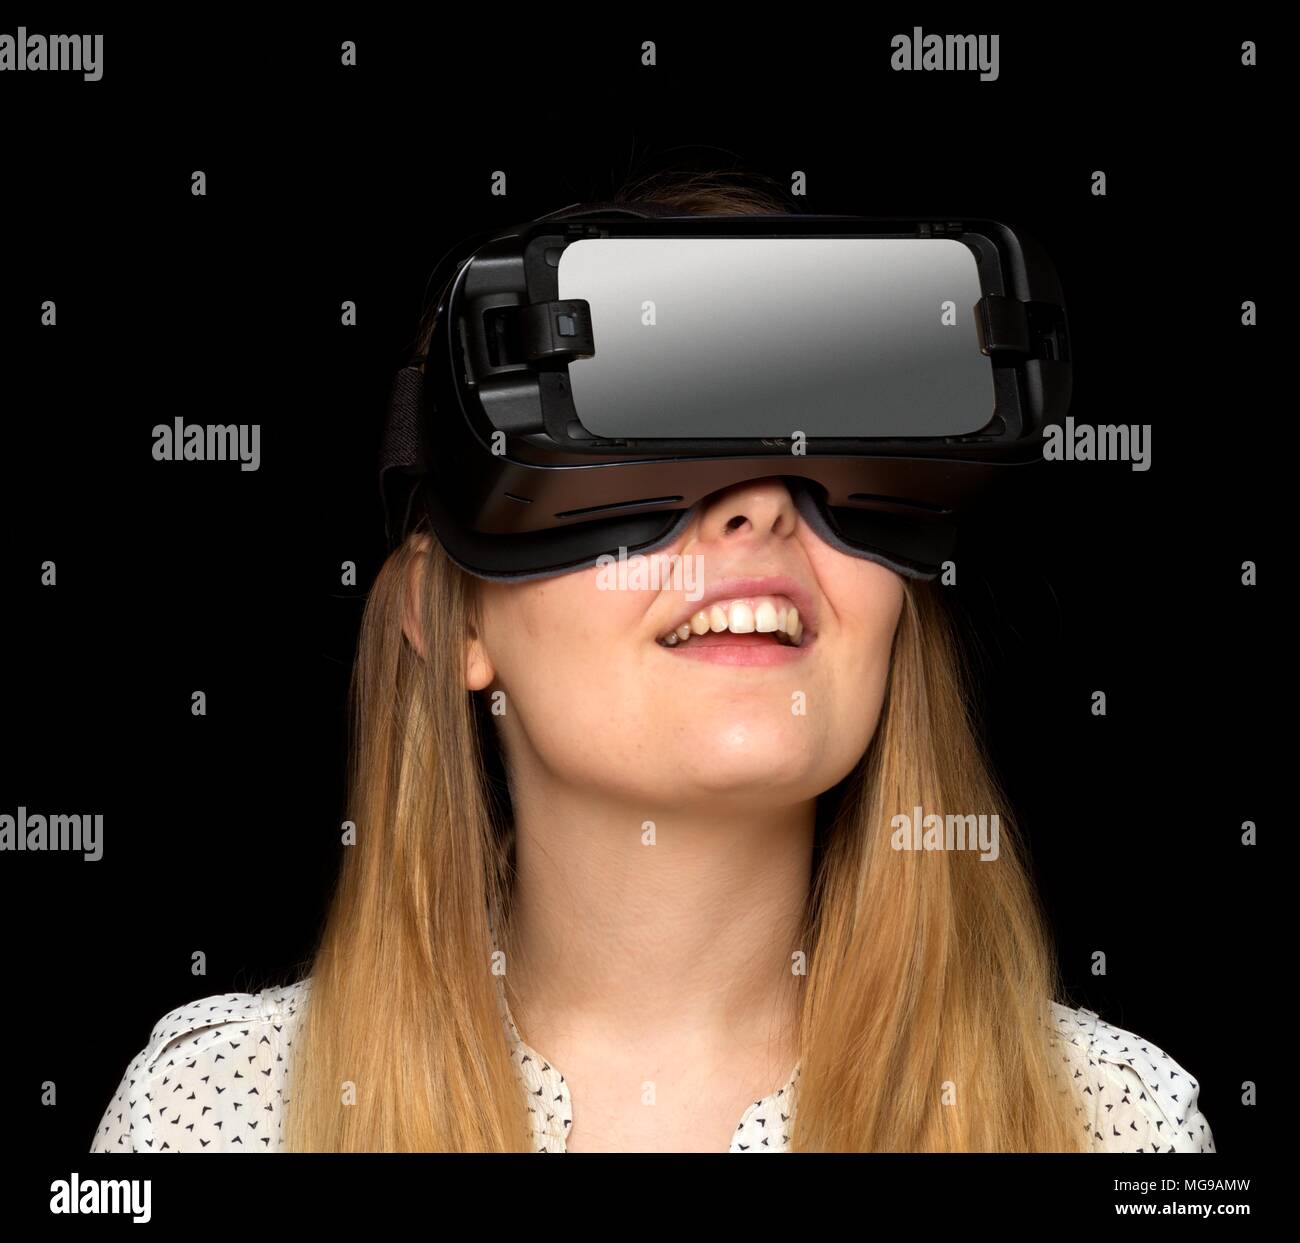 Joven mujer vistiendo casco de realidad virtual, Foto de estudio. Foto de stock